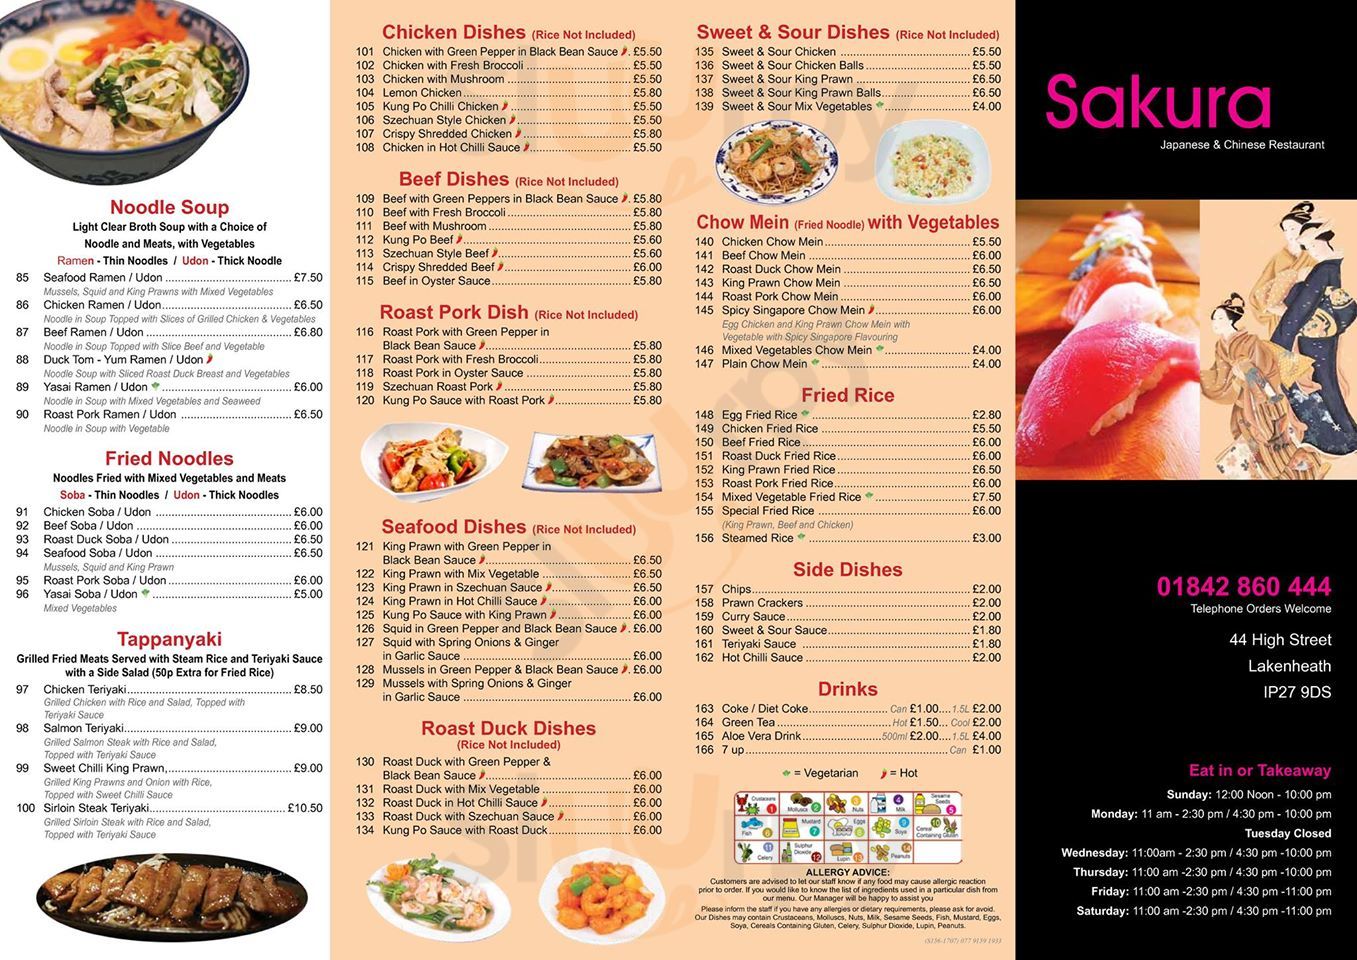 Sakura - Japanese & Chinese Restaurant Lakenheath Menu - 1